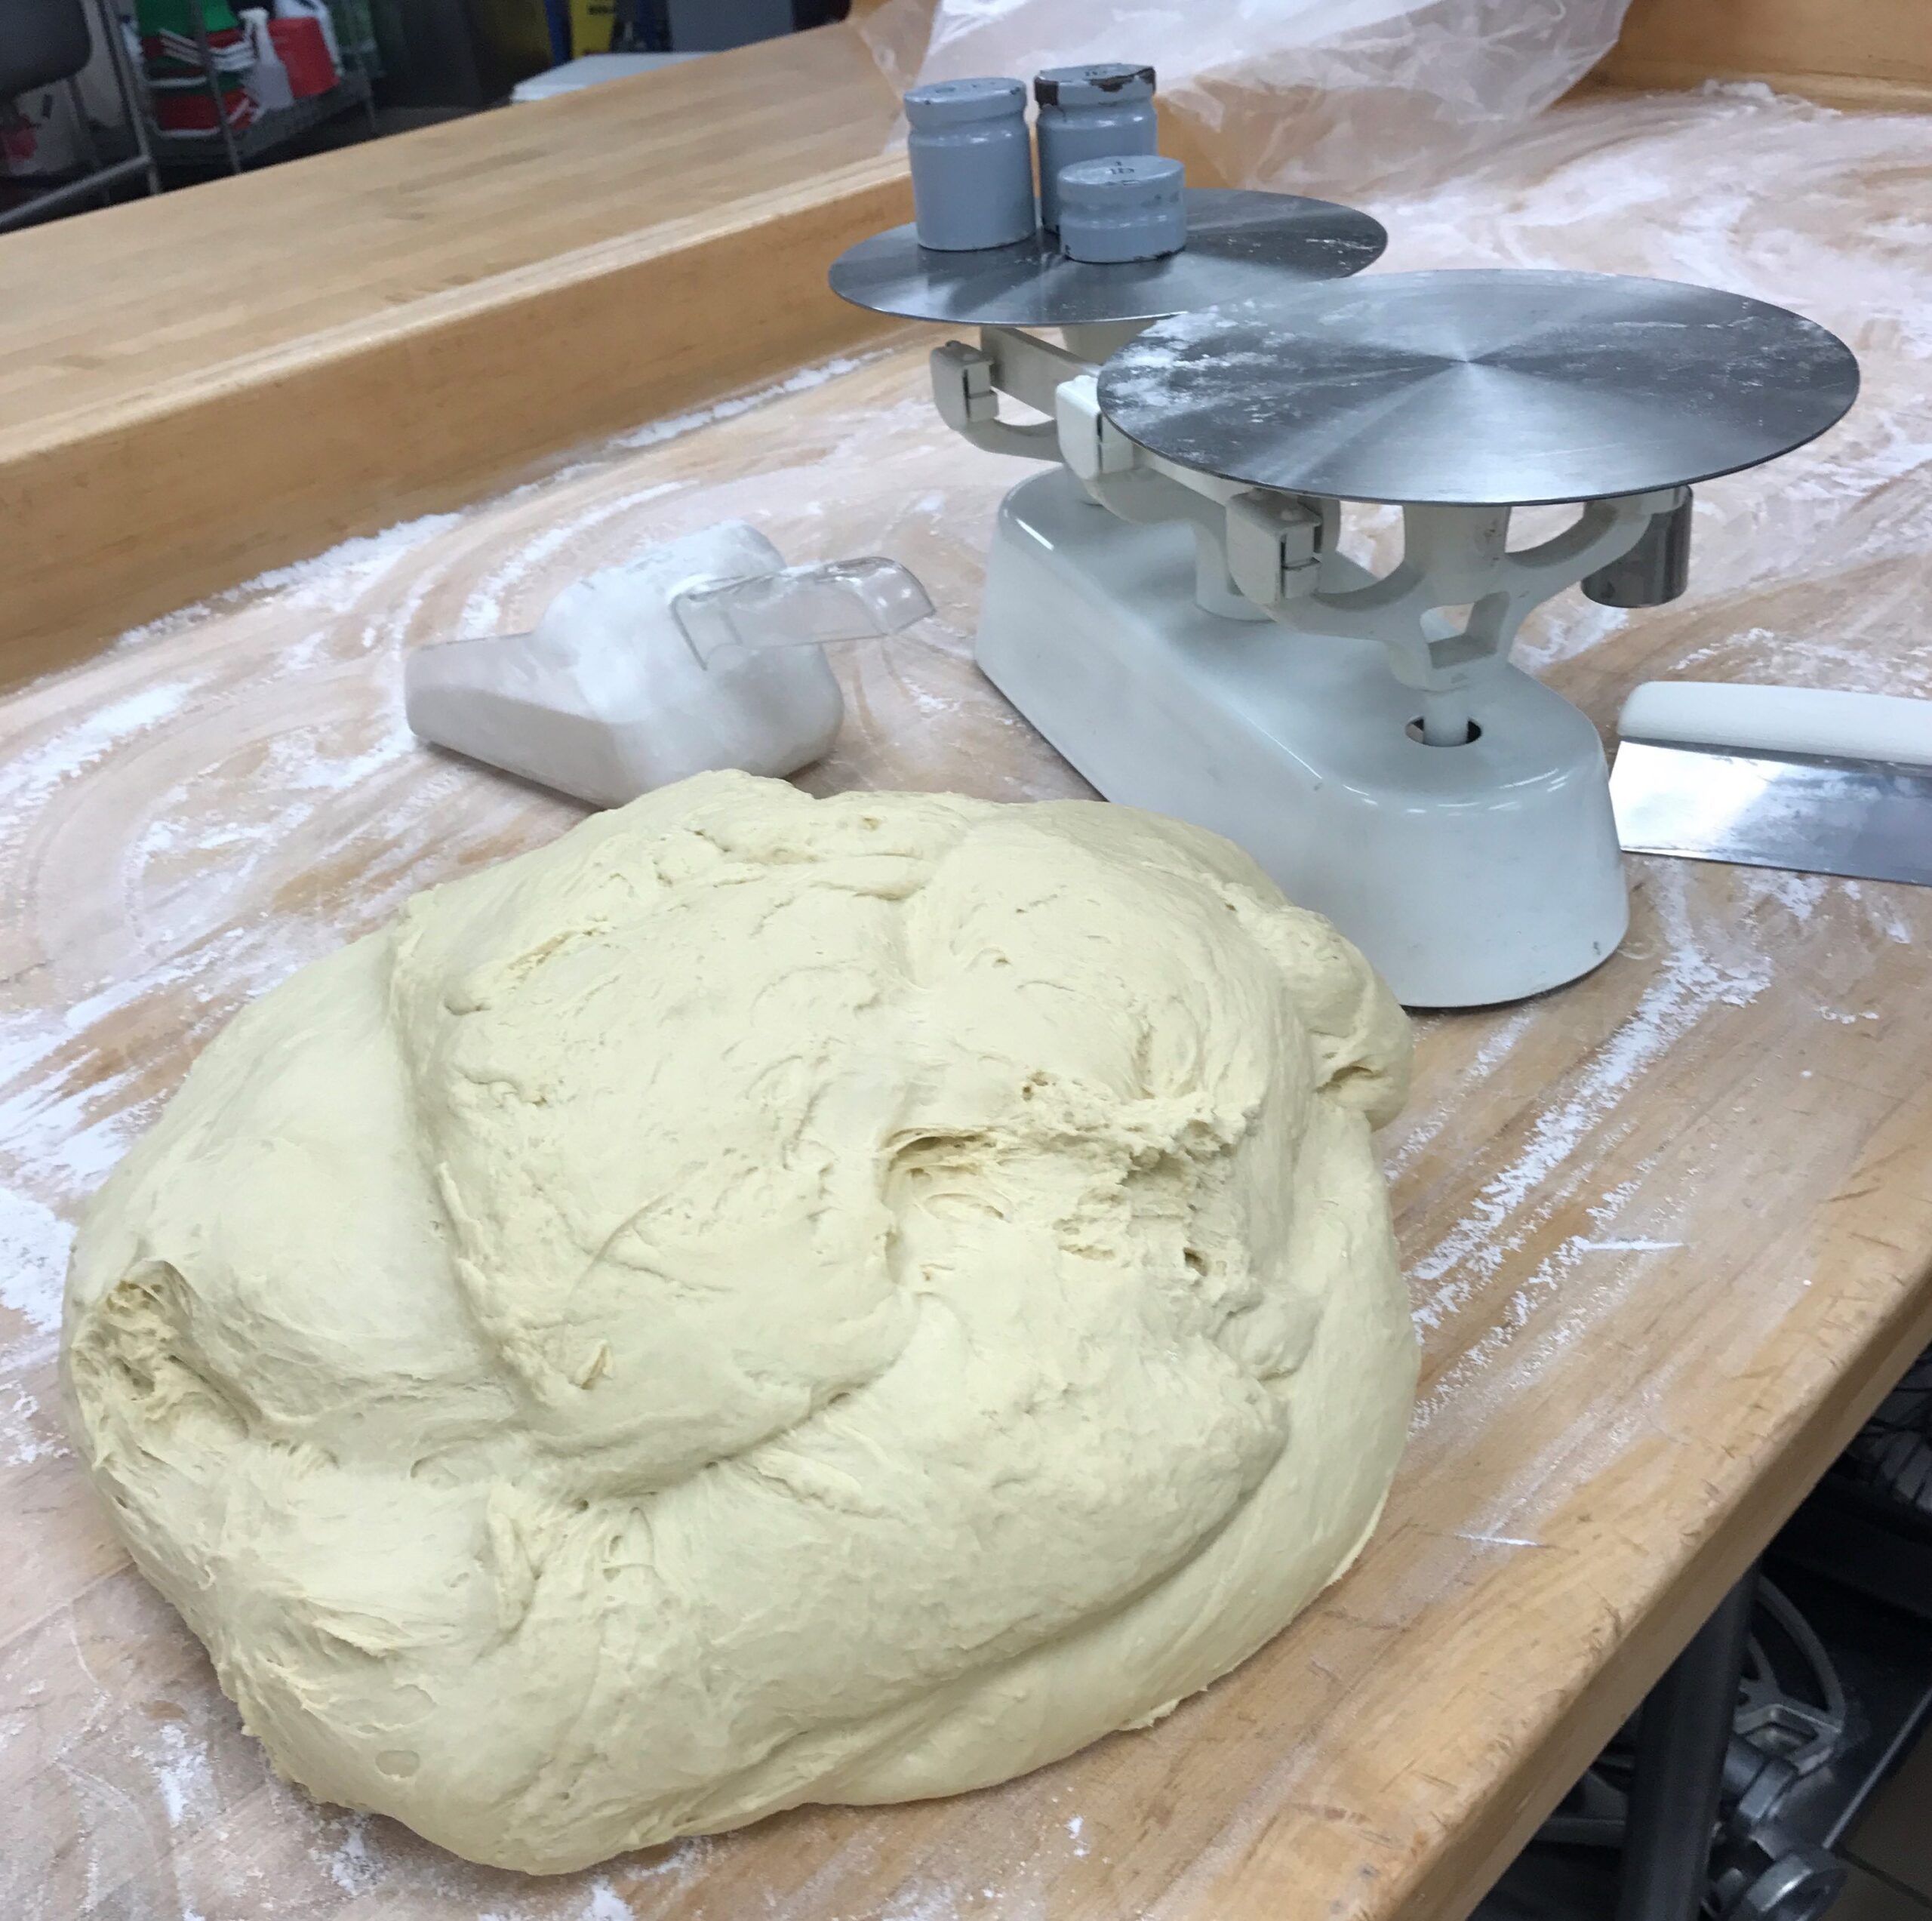 Dough for the dinner rolls